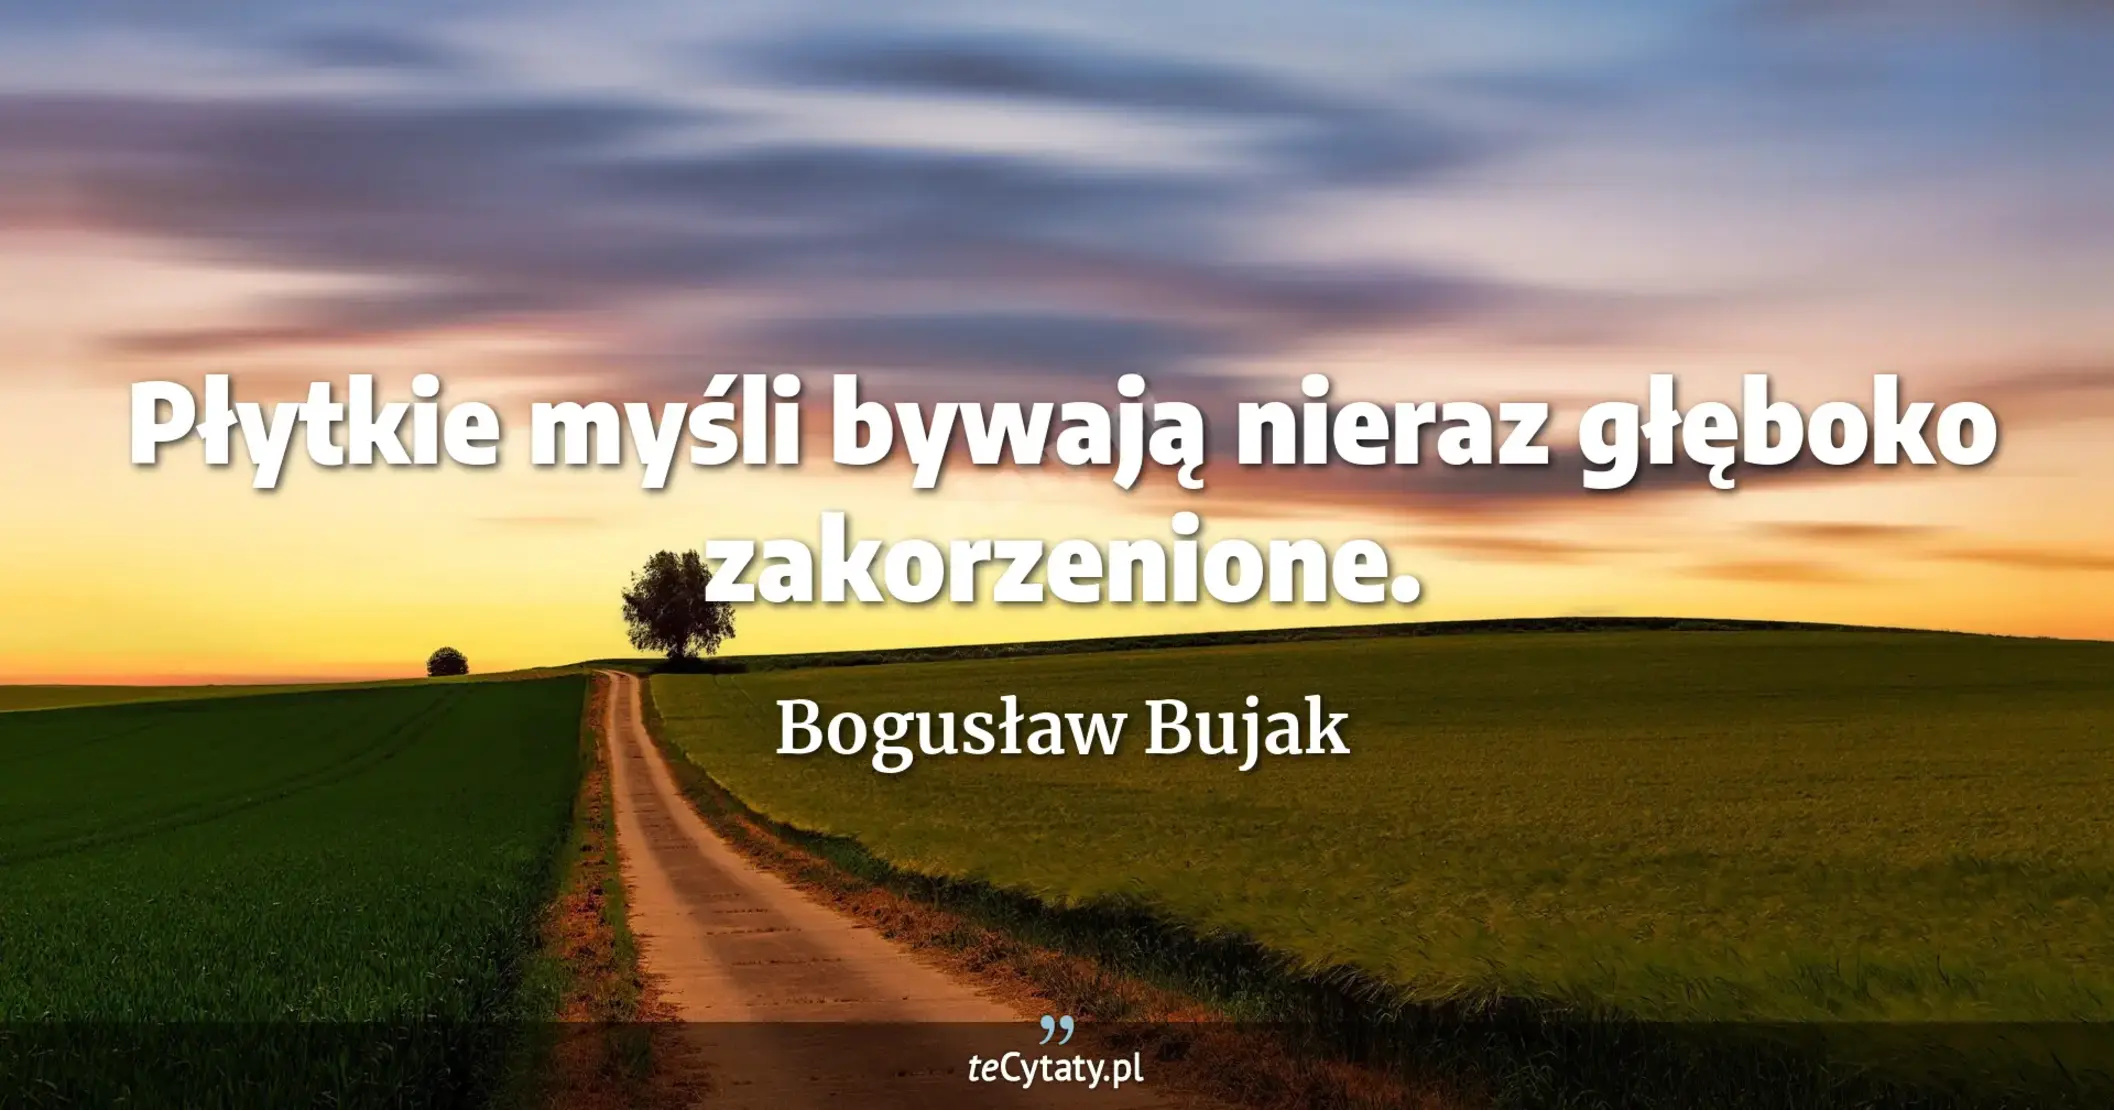 Płytkie myśli bywają nieraz głęboko zakorzenione. - Bogusław Bujak